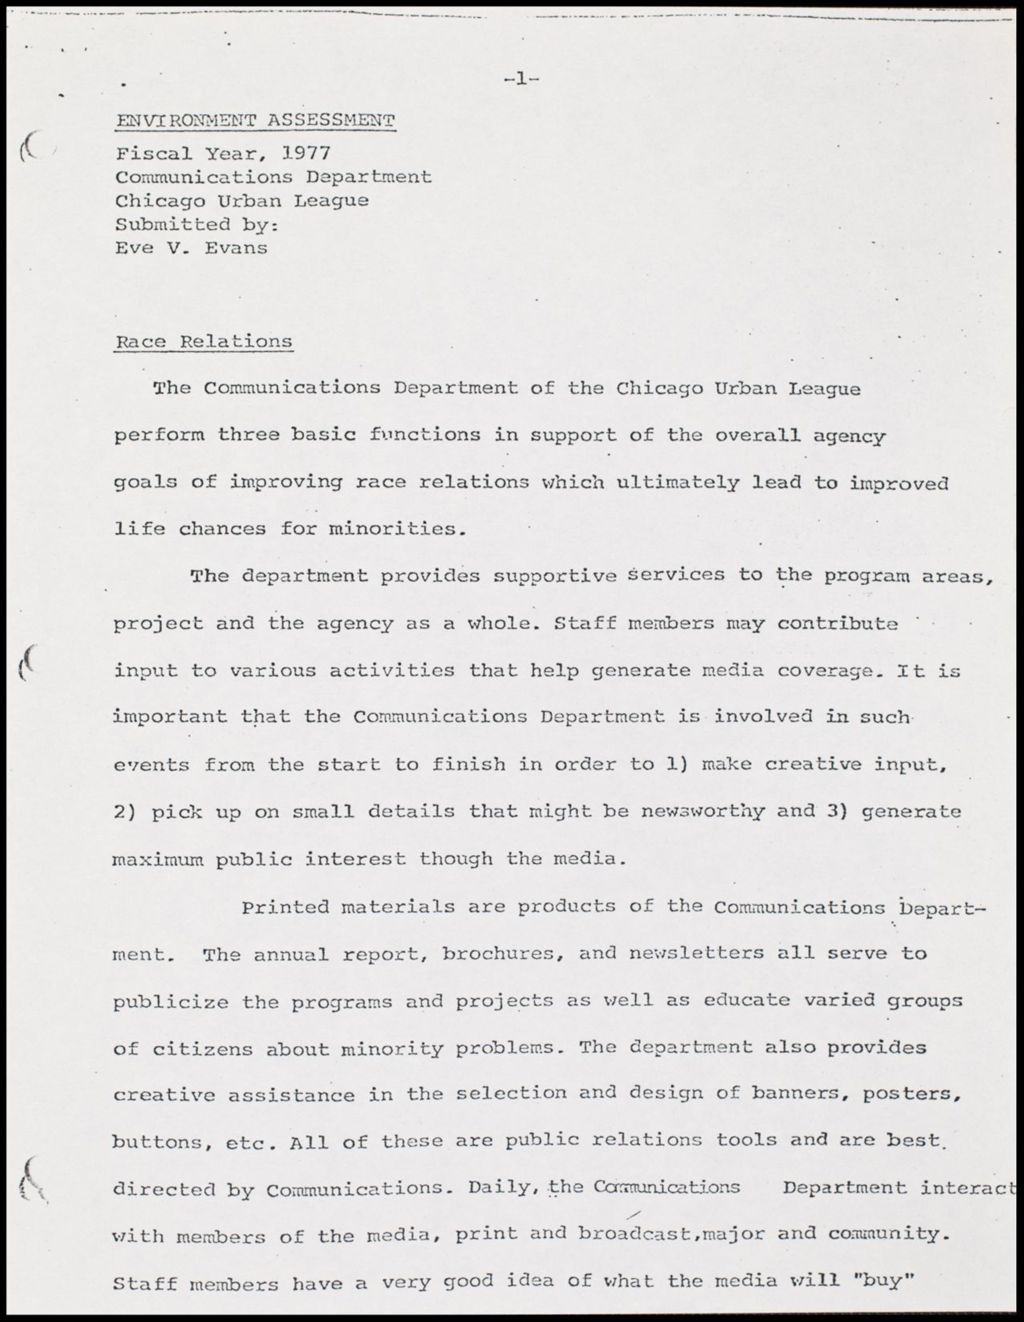 Miniature of Communications Department Environmental Assessment, 1977 (Folder III-1837)